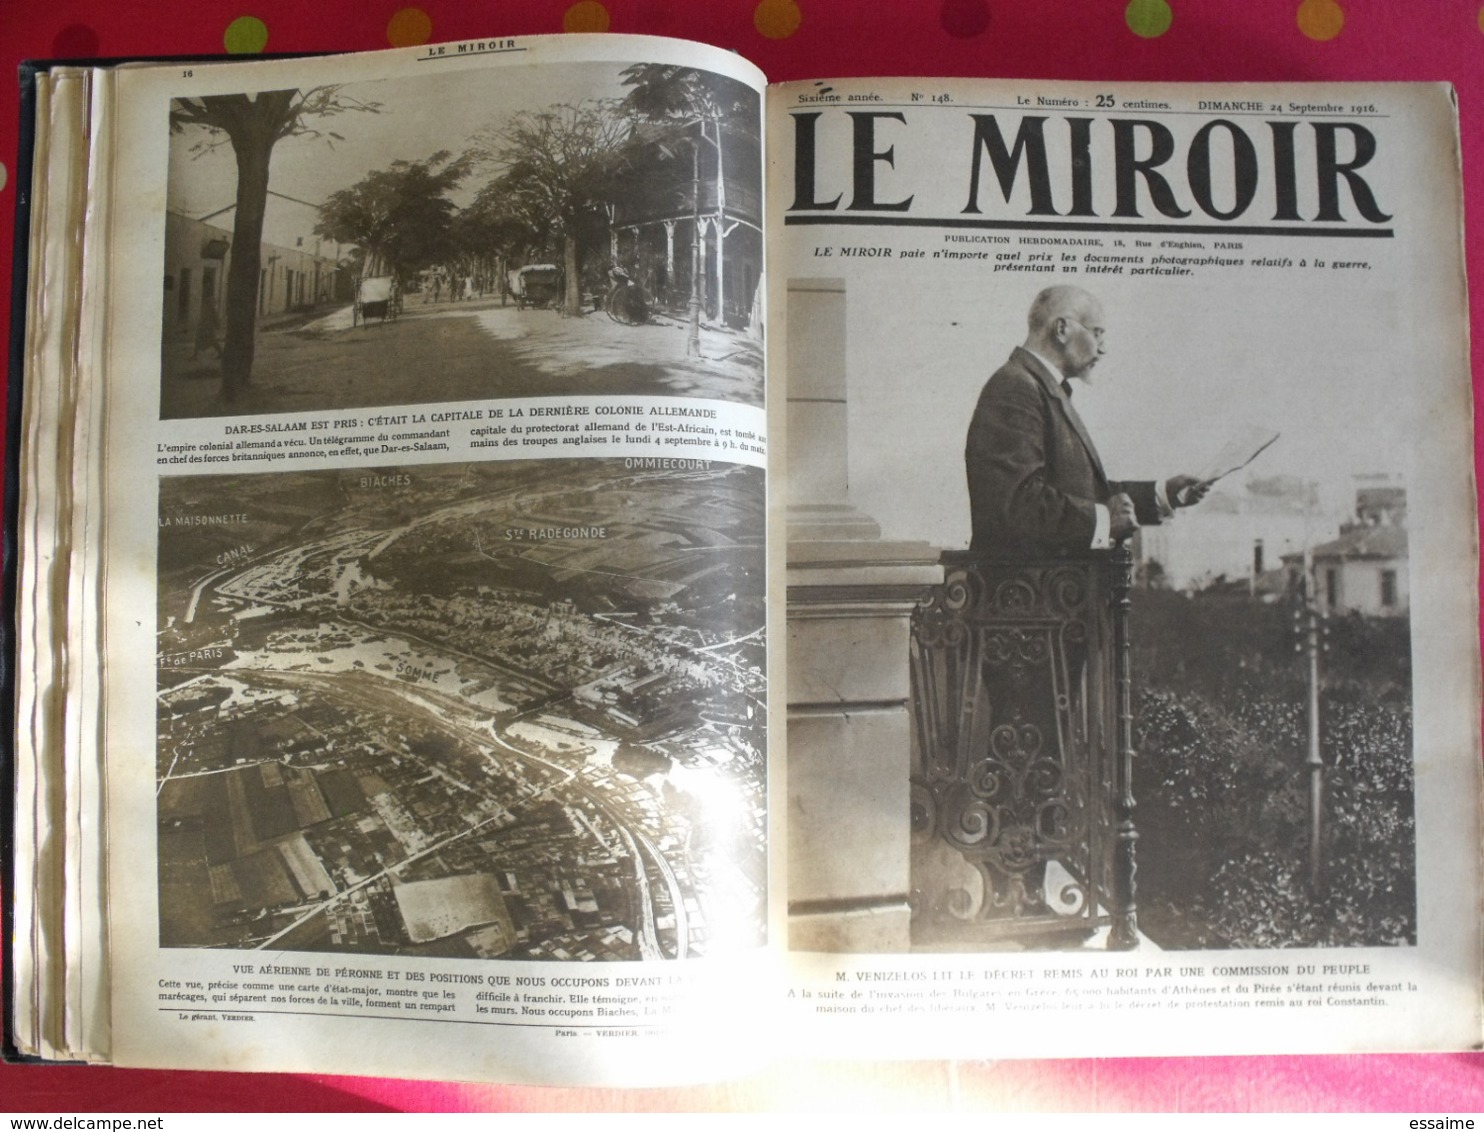 Le miroir. 1916/17. 52 numéros. l'actualité de l'époque très illustrée pendant la guerre 14-18. recueil, reliure.